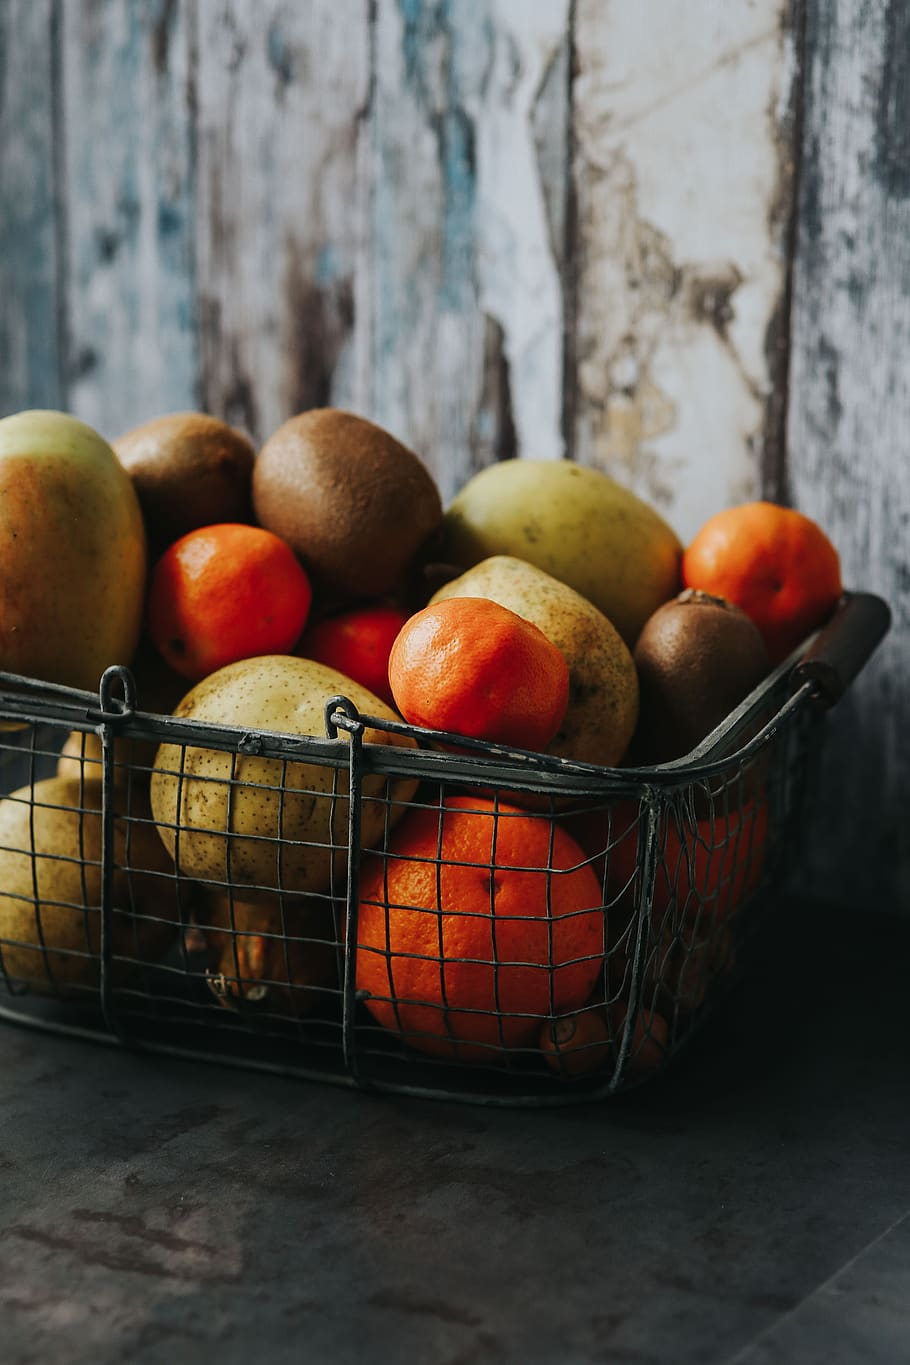 Manzana, cesta, naranja, pera, kiwi, fruta, alimentación saludable, bienestar, comida, comida y bebida